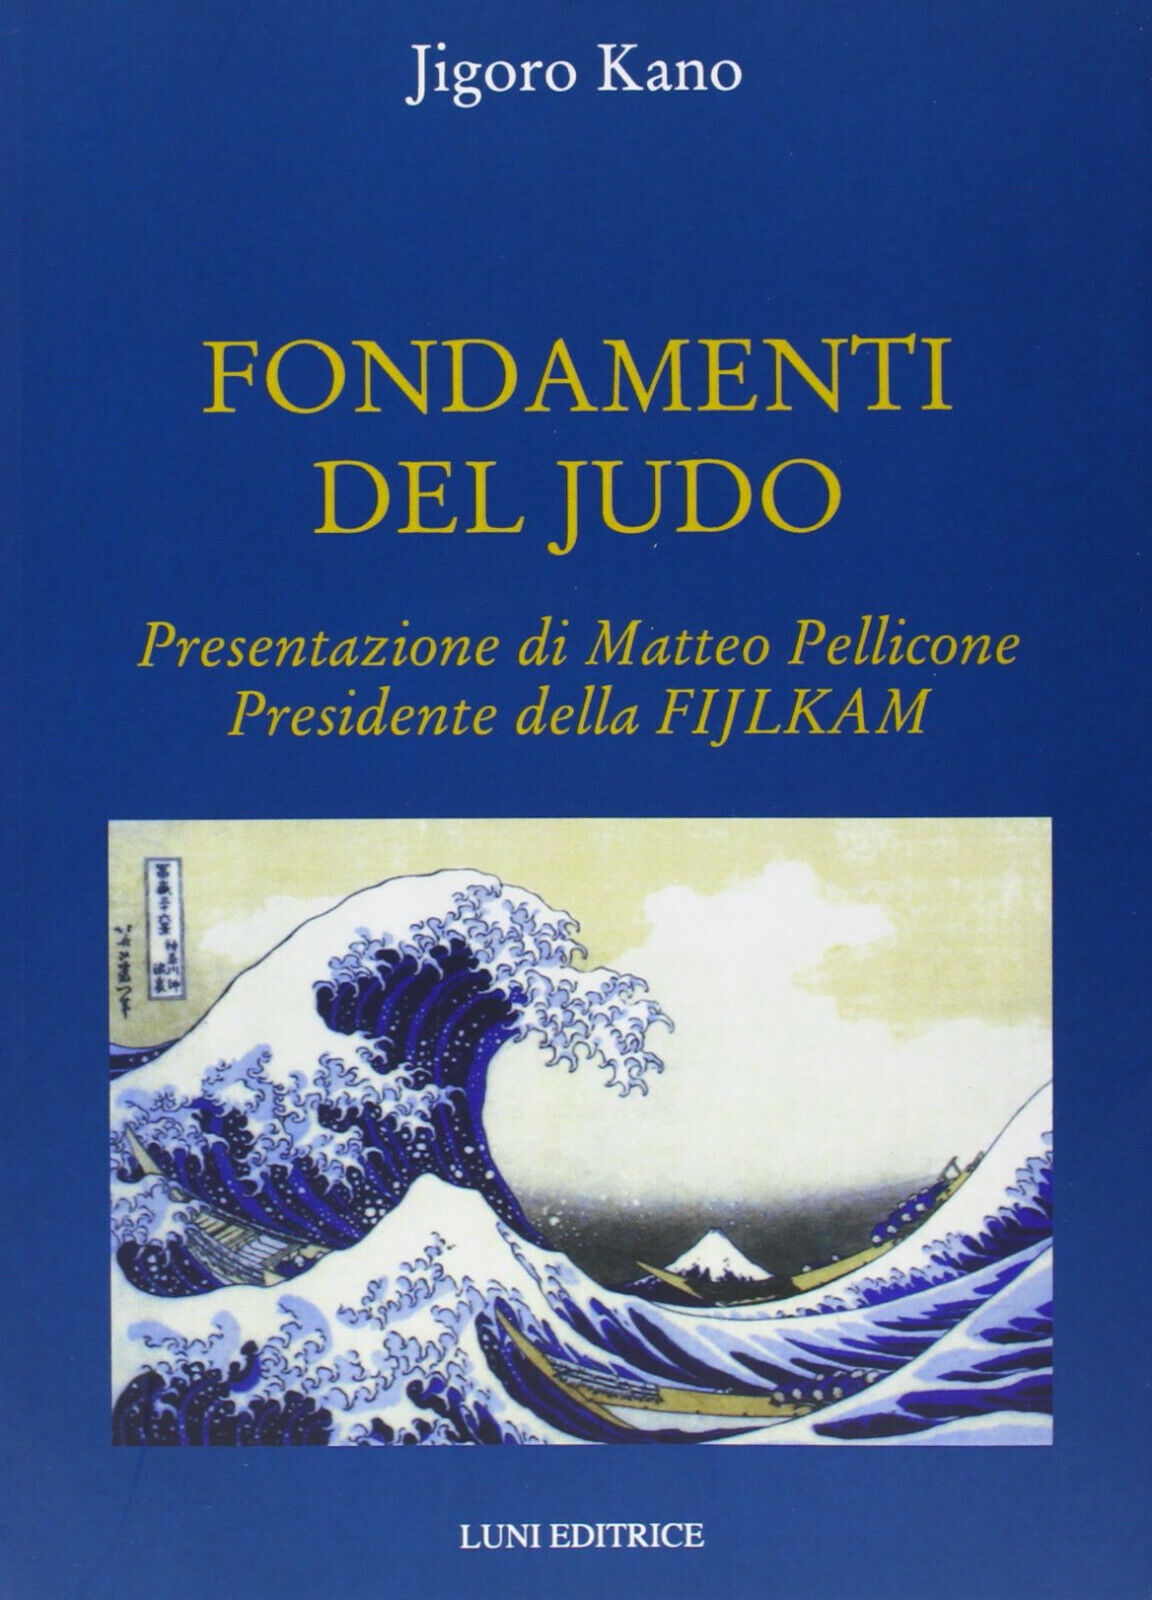 Fondamenti del judo - Jigoro Kano - Luni, 2013 libro usato